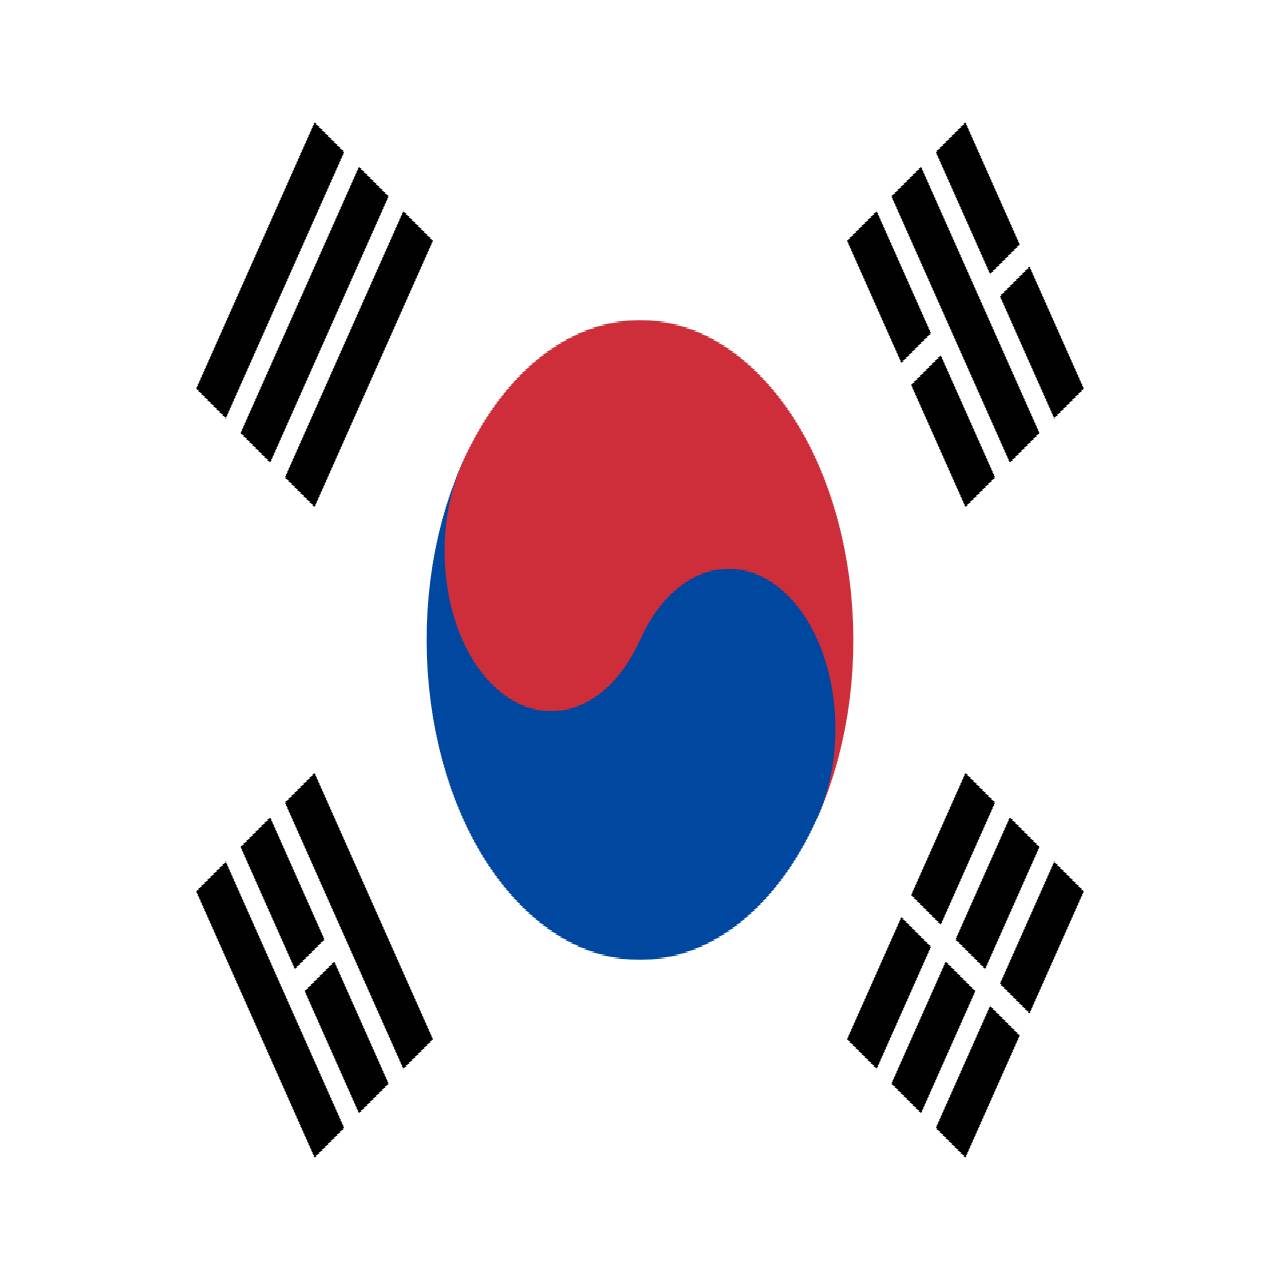 https://neelikon.co.uk/wp-content/uploads/2022/03/korea-flag.jpg